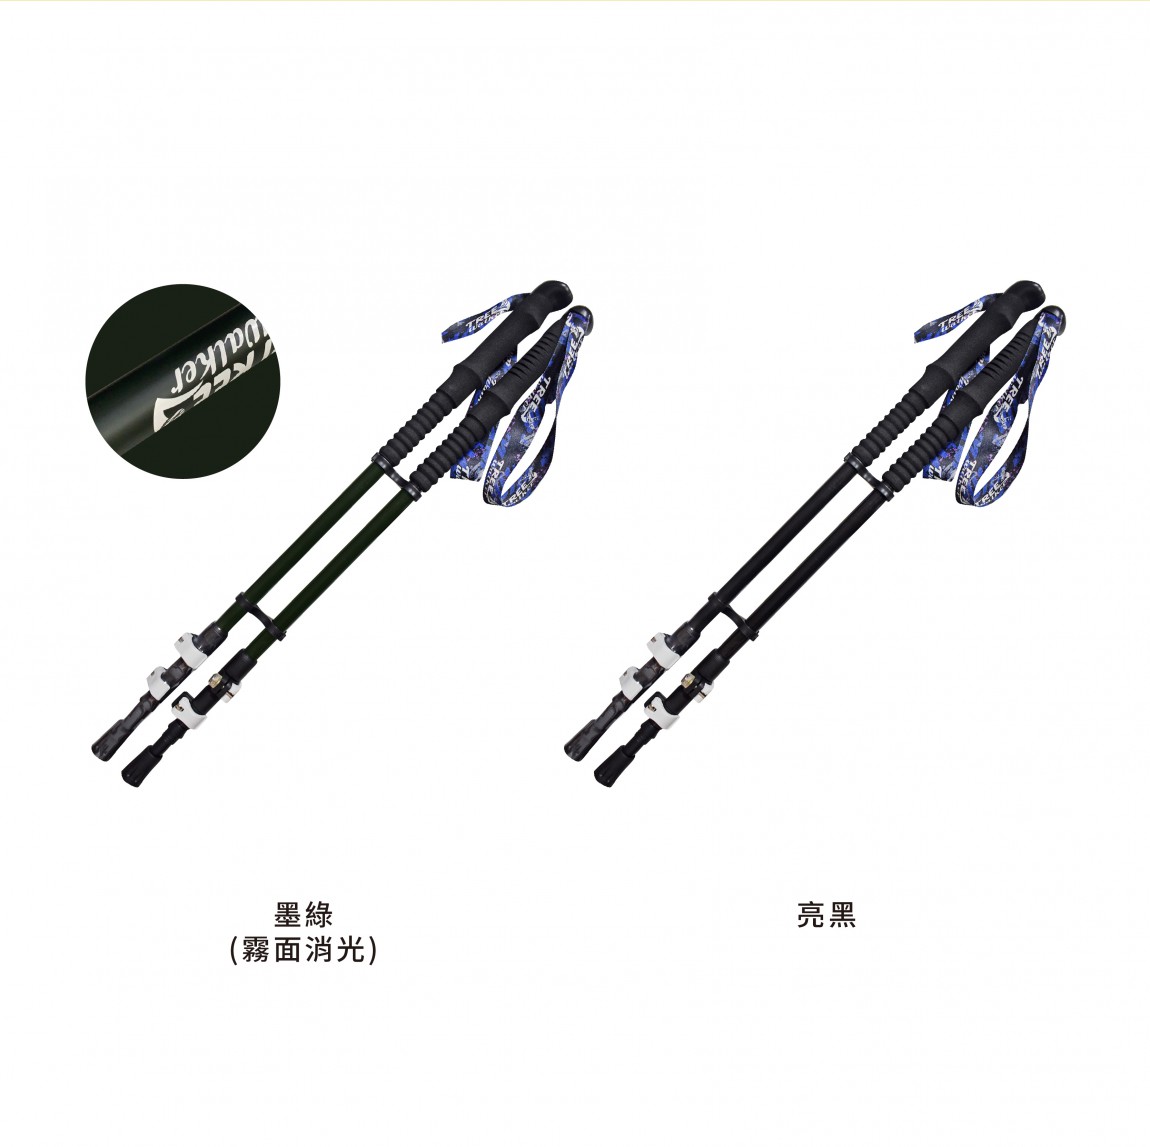 輕量碳纖維登山杖(成對)-800x800px-07